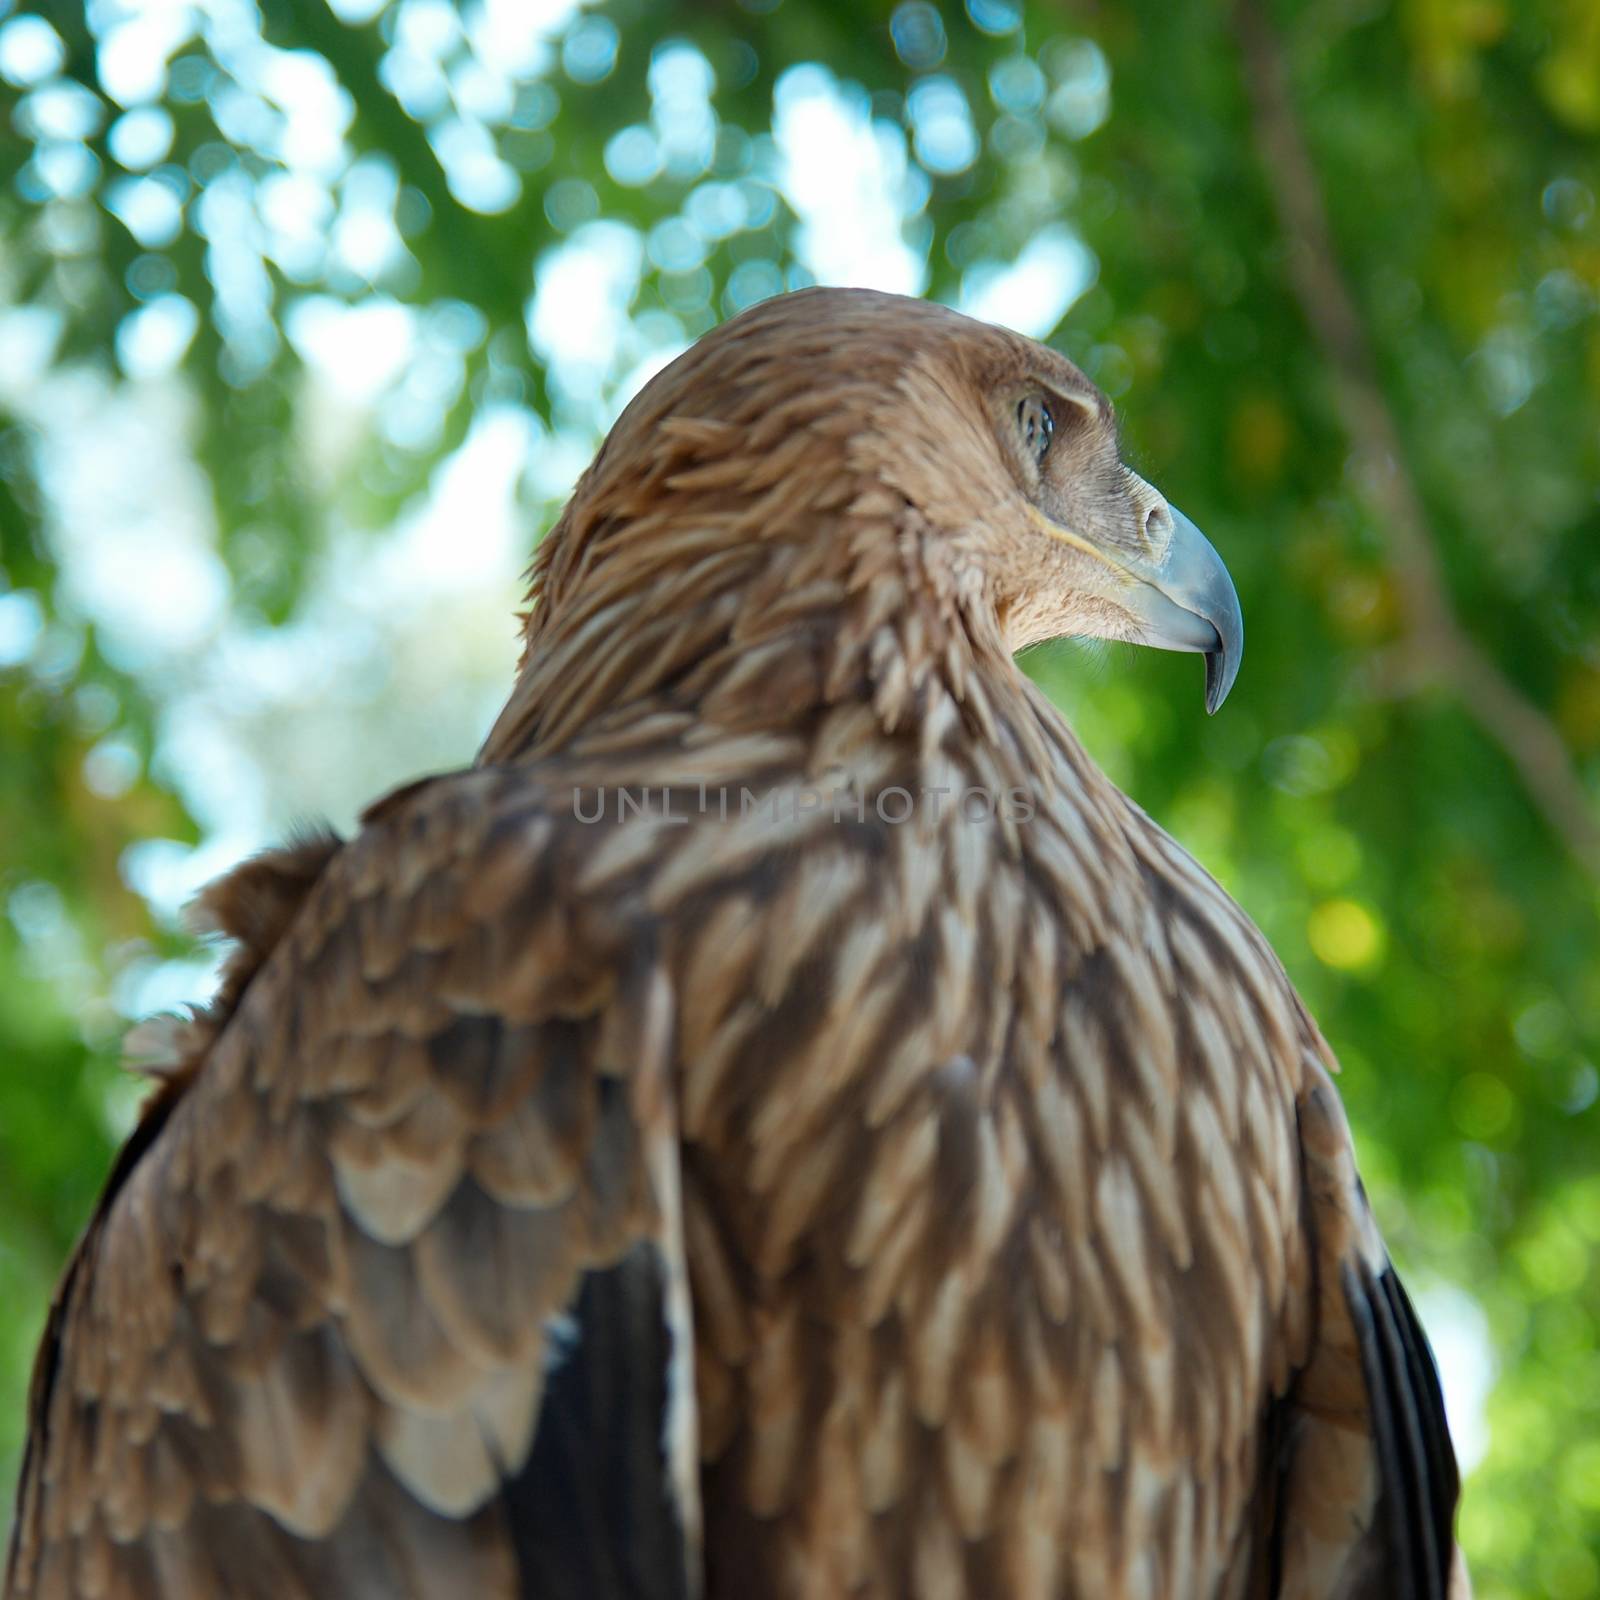 A hawk eagle sitting on the tree.